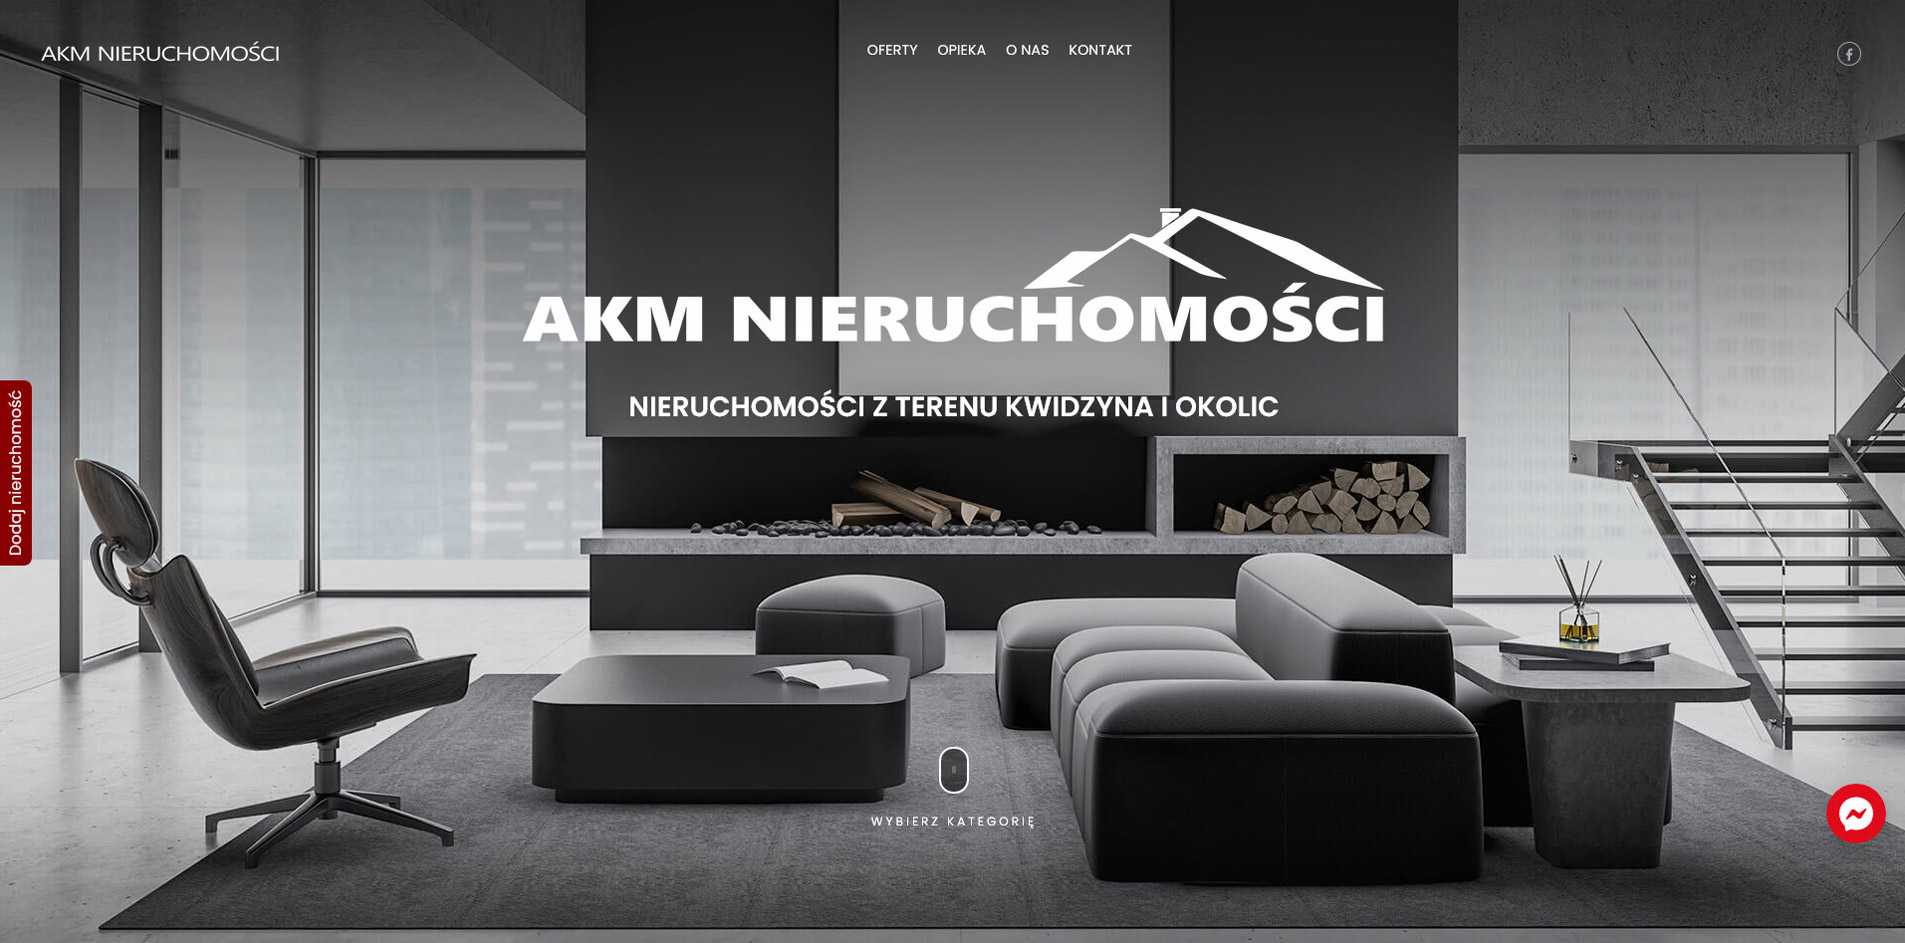 Główna strona www.akm-nieruchomosci.pl